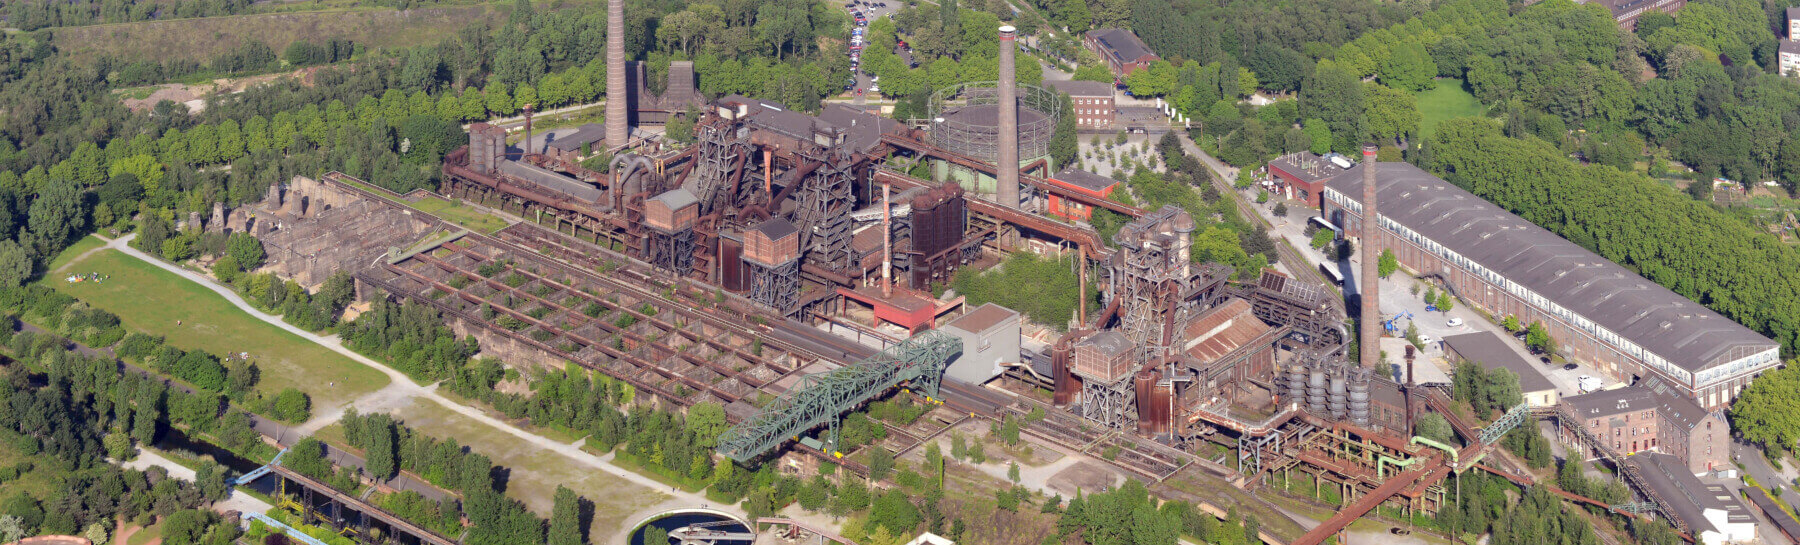 Luftbild Landschaftspark Duisburg-Nord